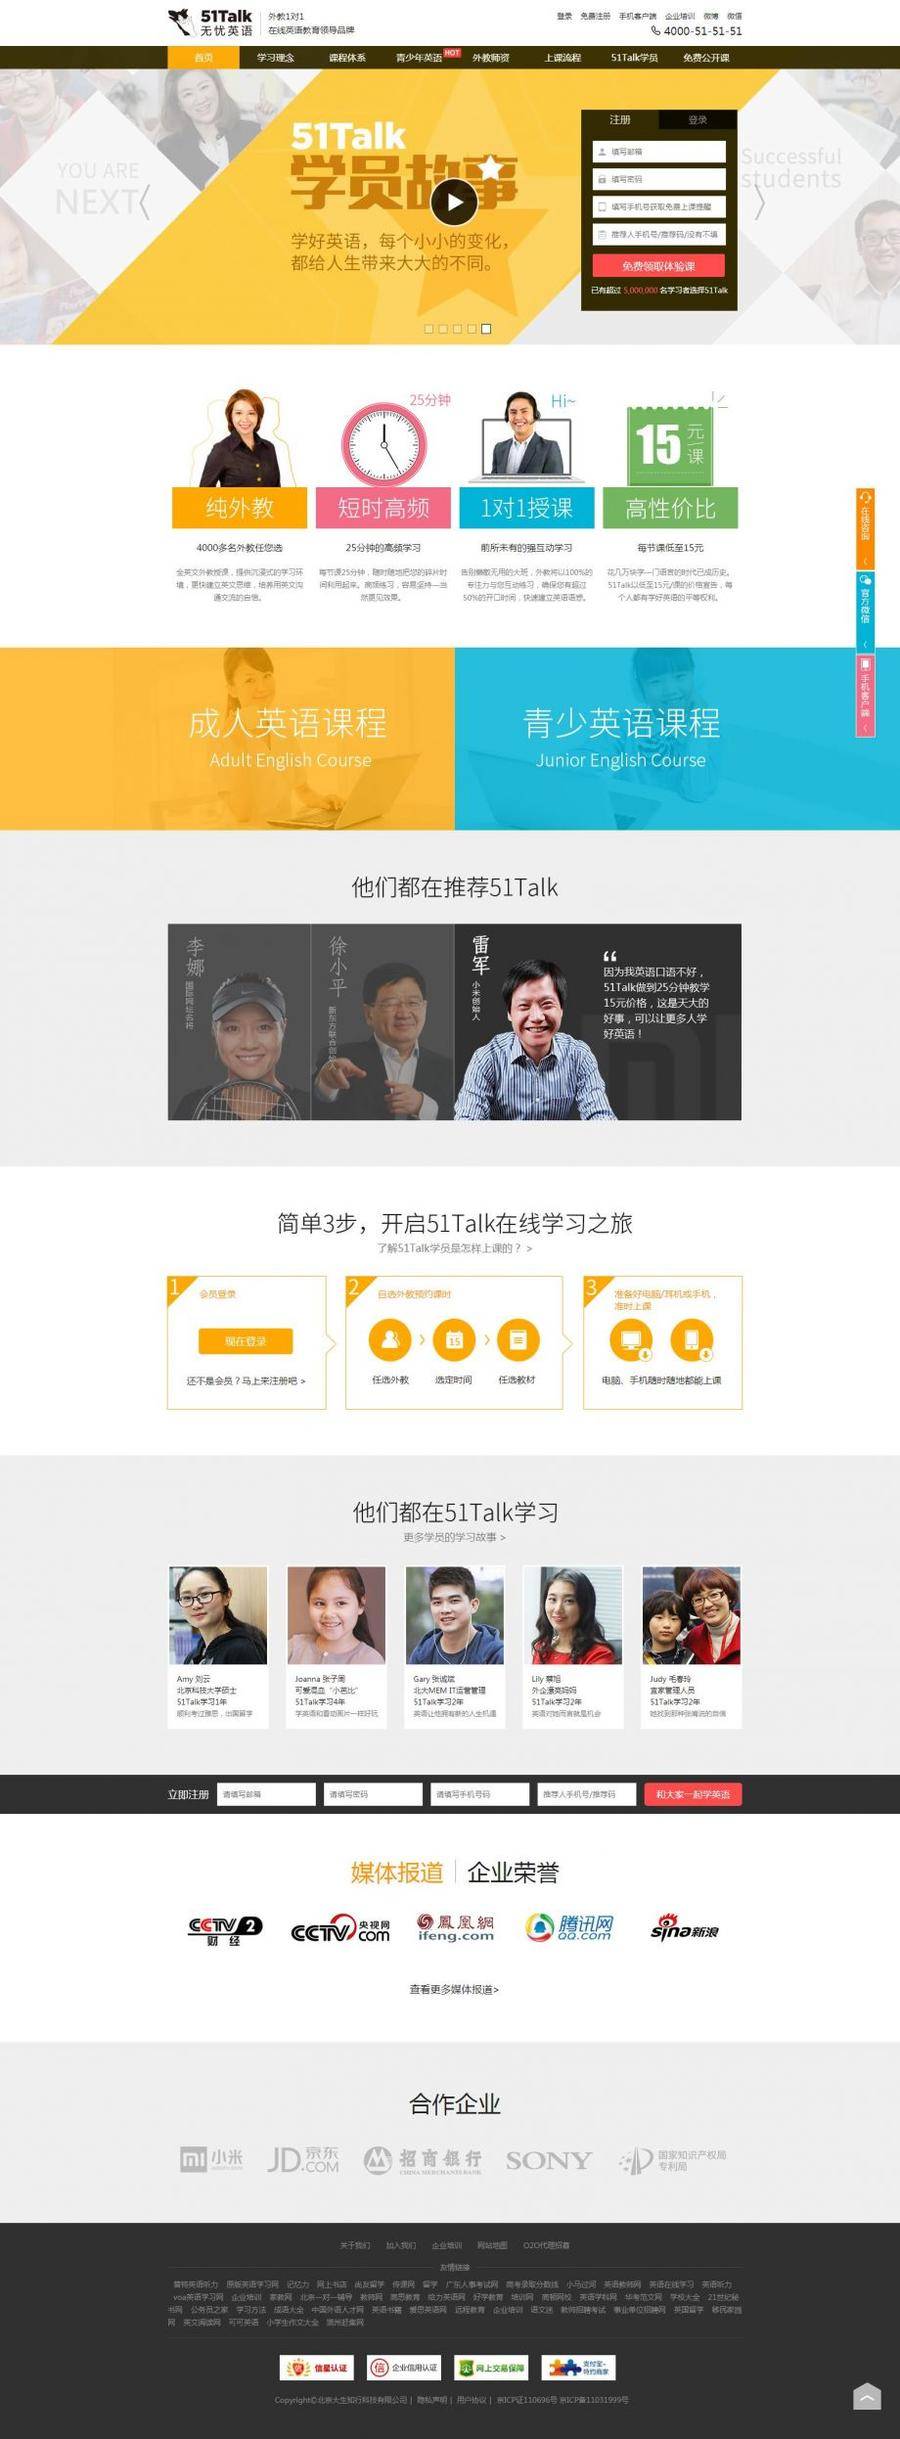 HTML5黄色主题英语一对一教育培训网站模板封面图